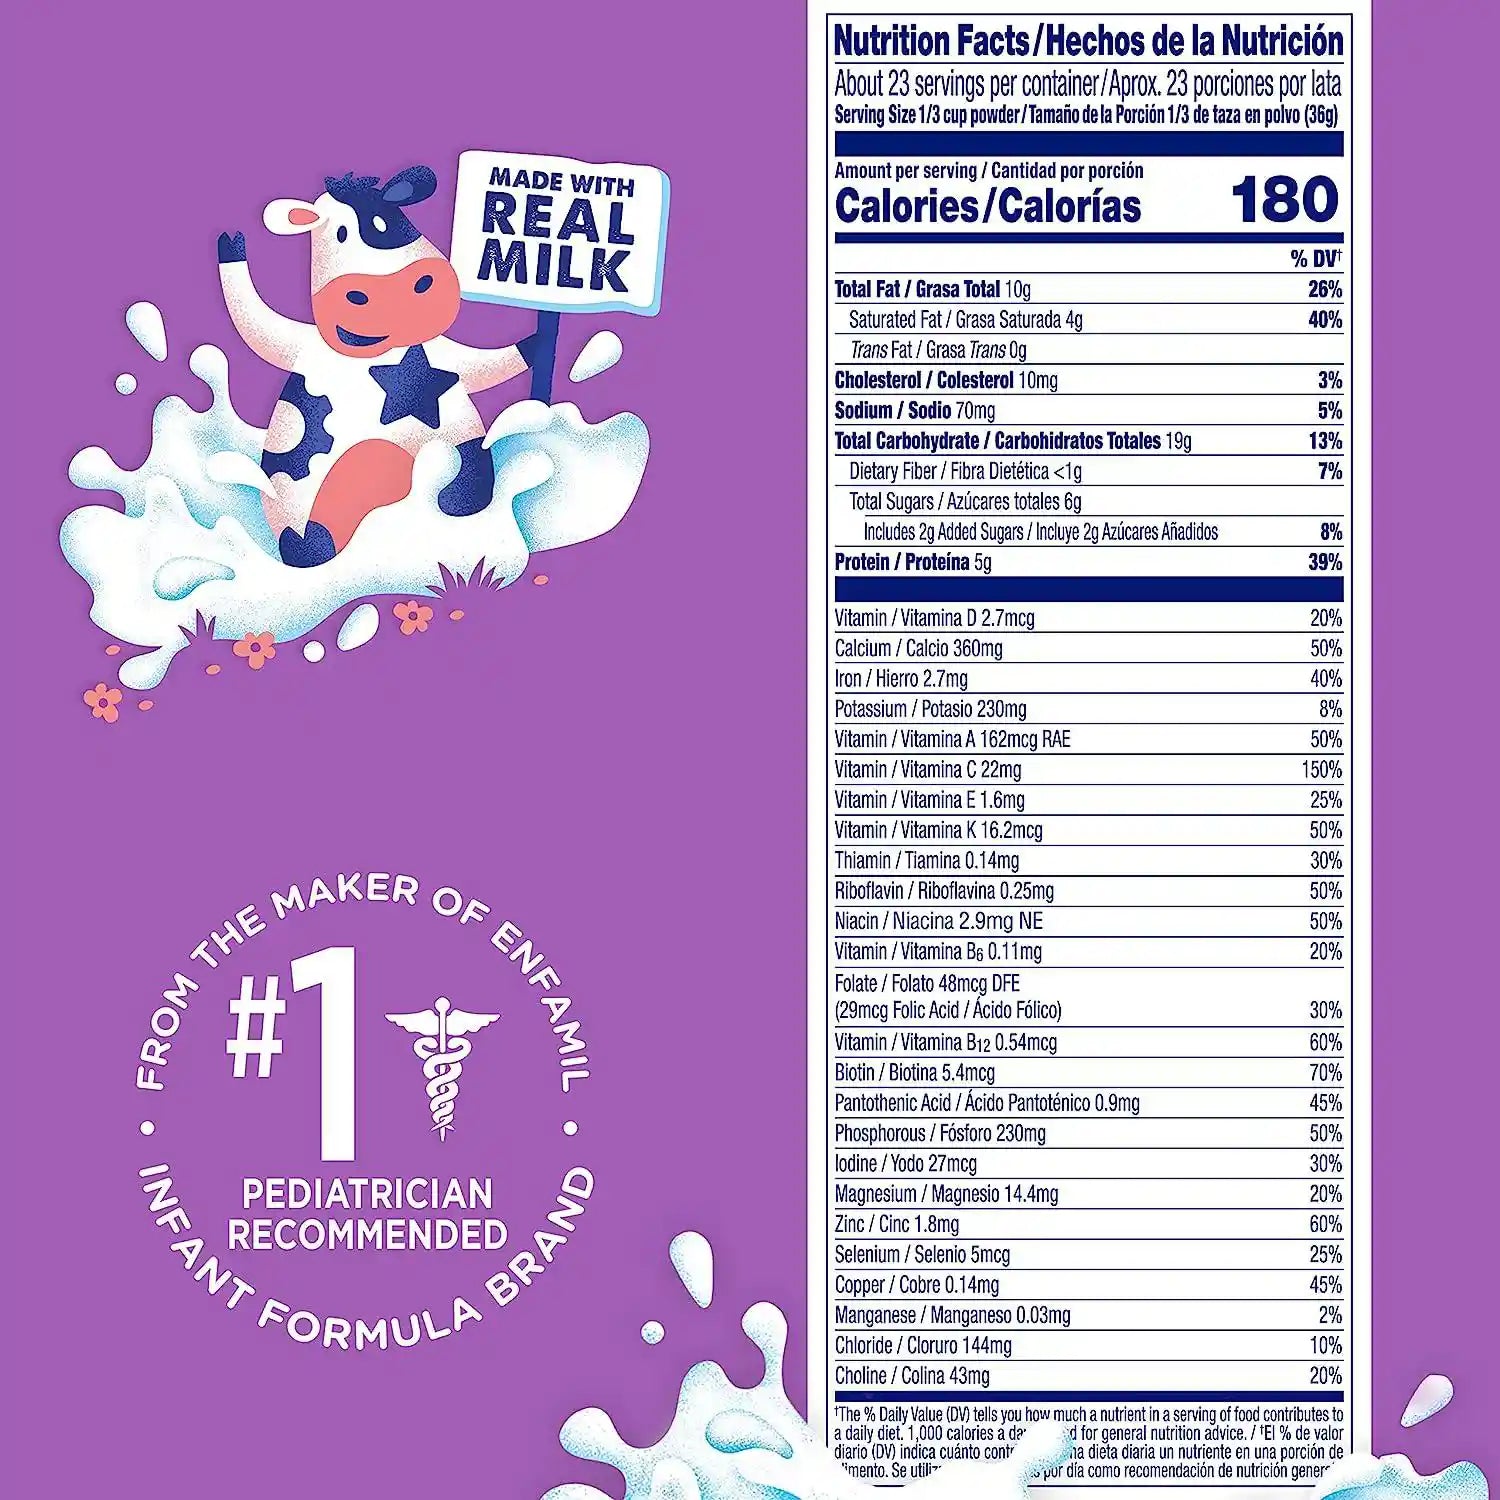 Buy Enfamil Premium Toddler Gentlease Nutritional Baby Milk Formula Drink - 825gms Online in India at uyyaala.com